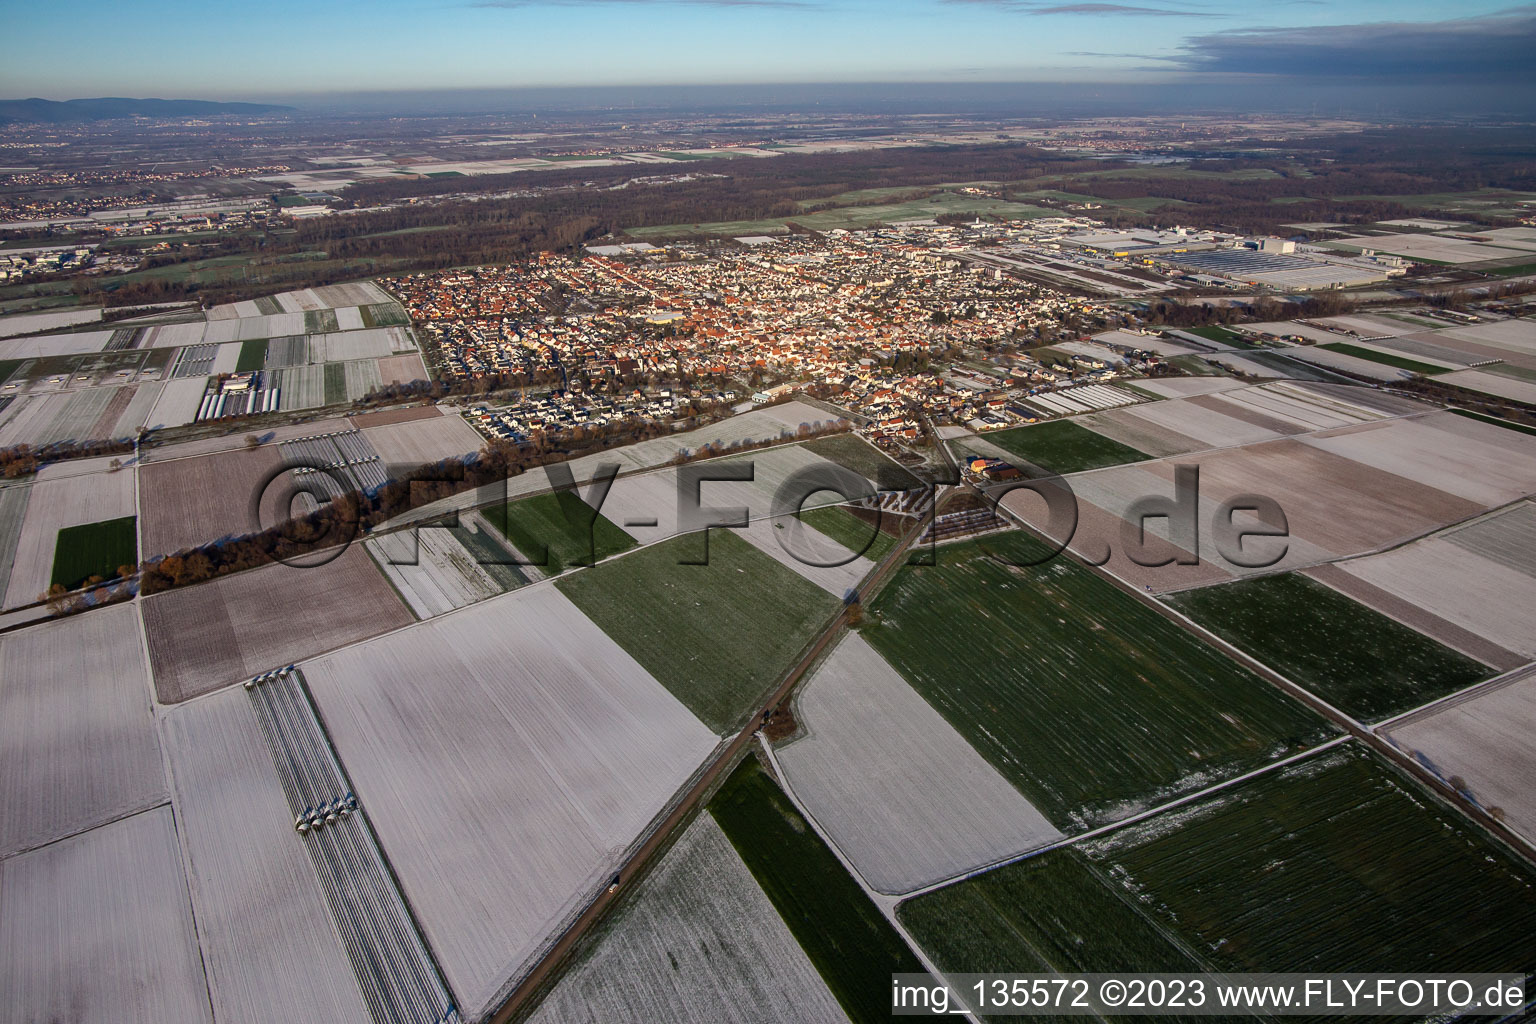 Vue aérienne de Du sud-ouest en hiver quand il y a de la neige à Offenbach an der Queich dans le département Rhénanie-Palatinat, Allemagne